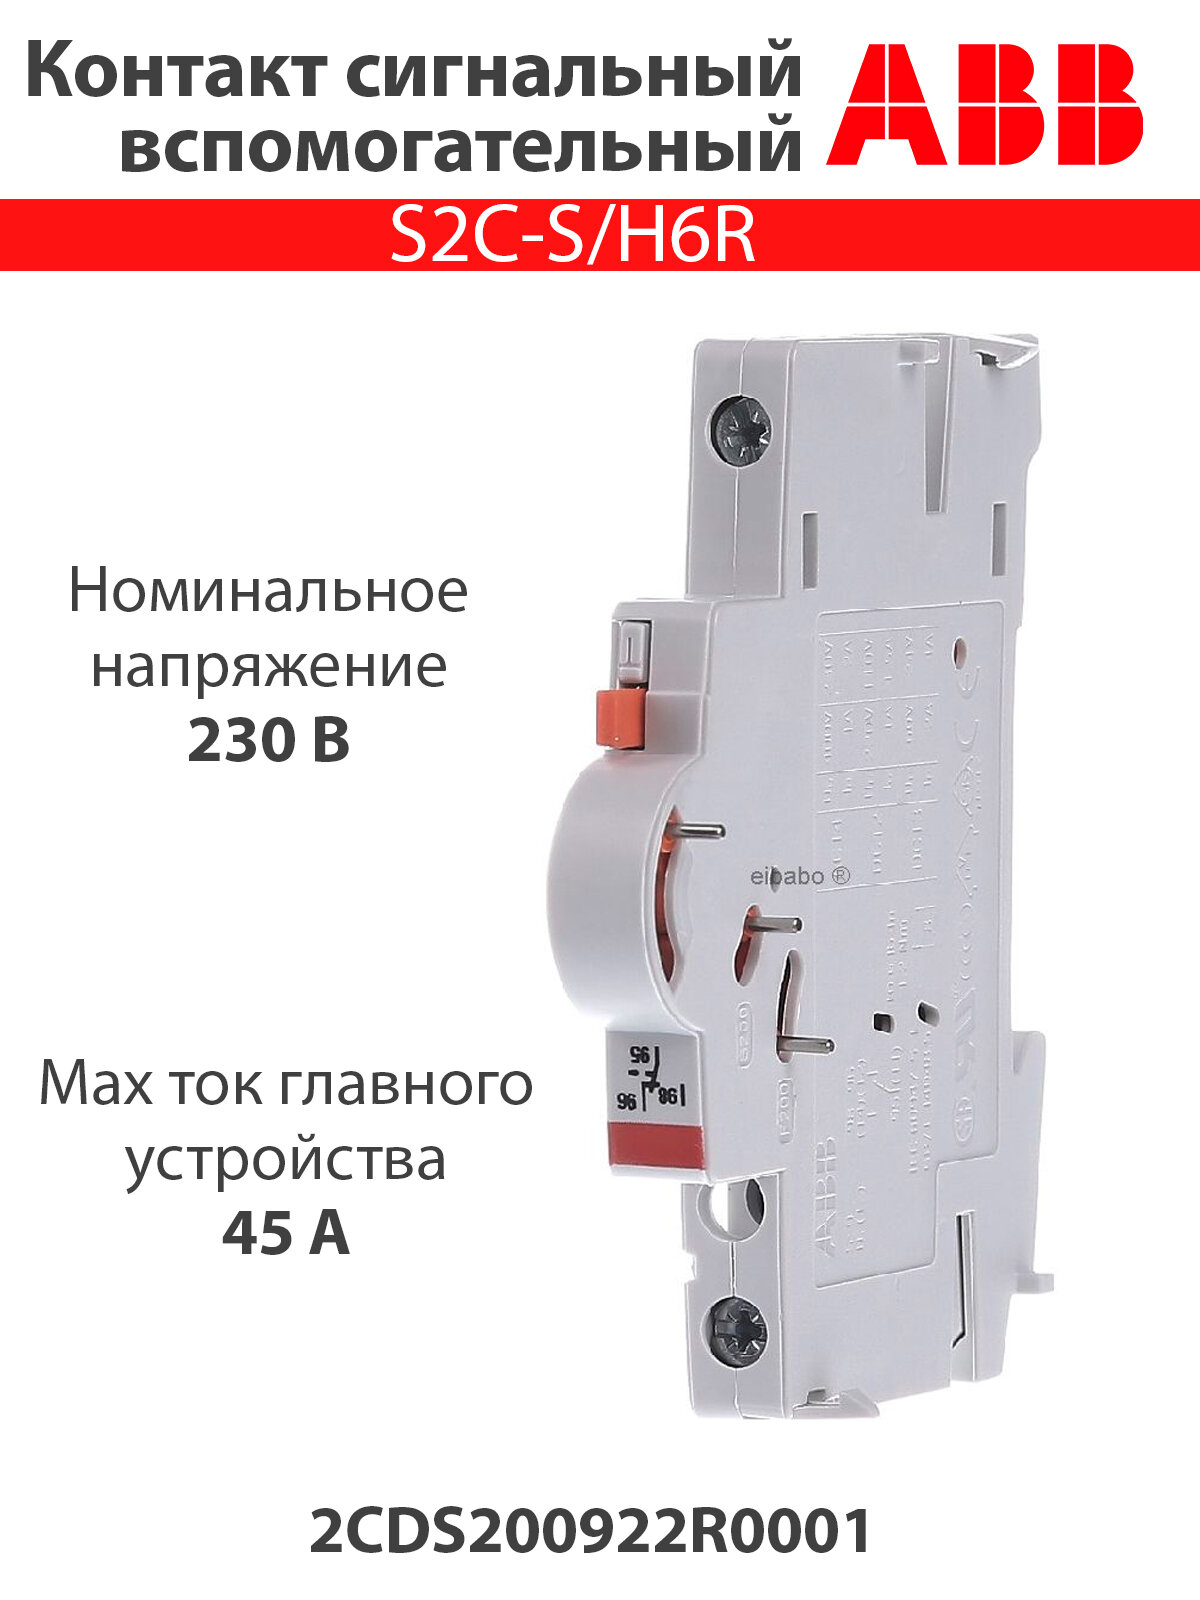 Контакт сигнальный S2C-S/H6R 2CDS200922R0001